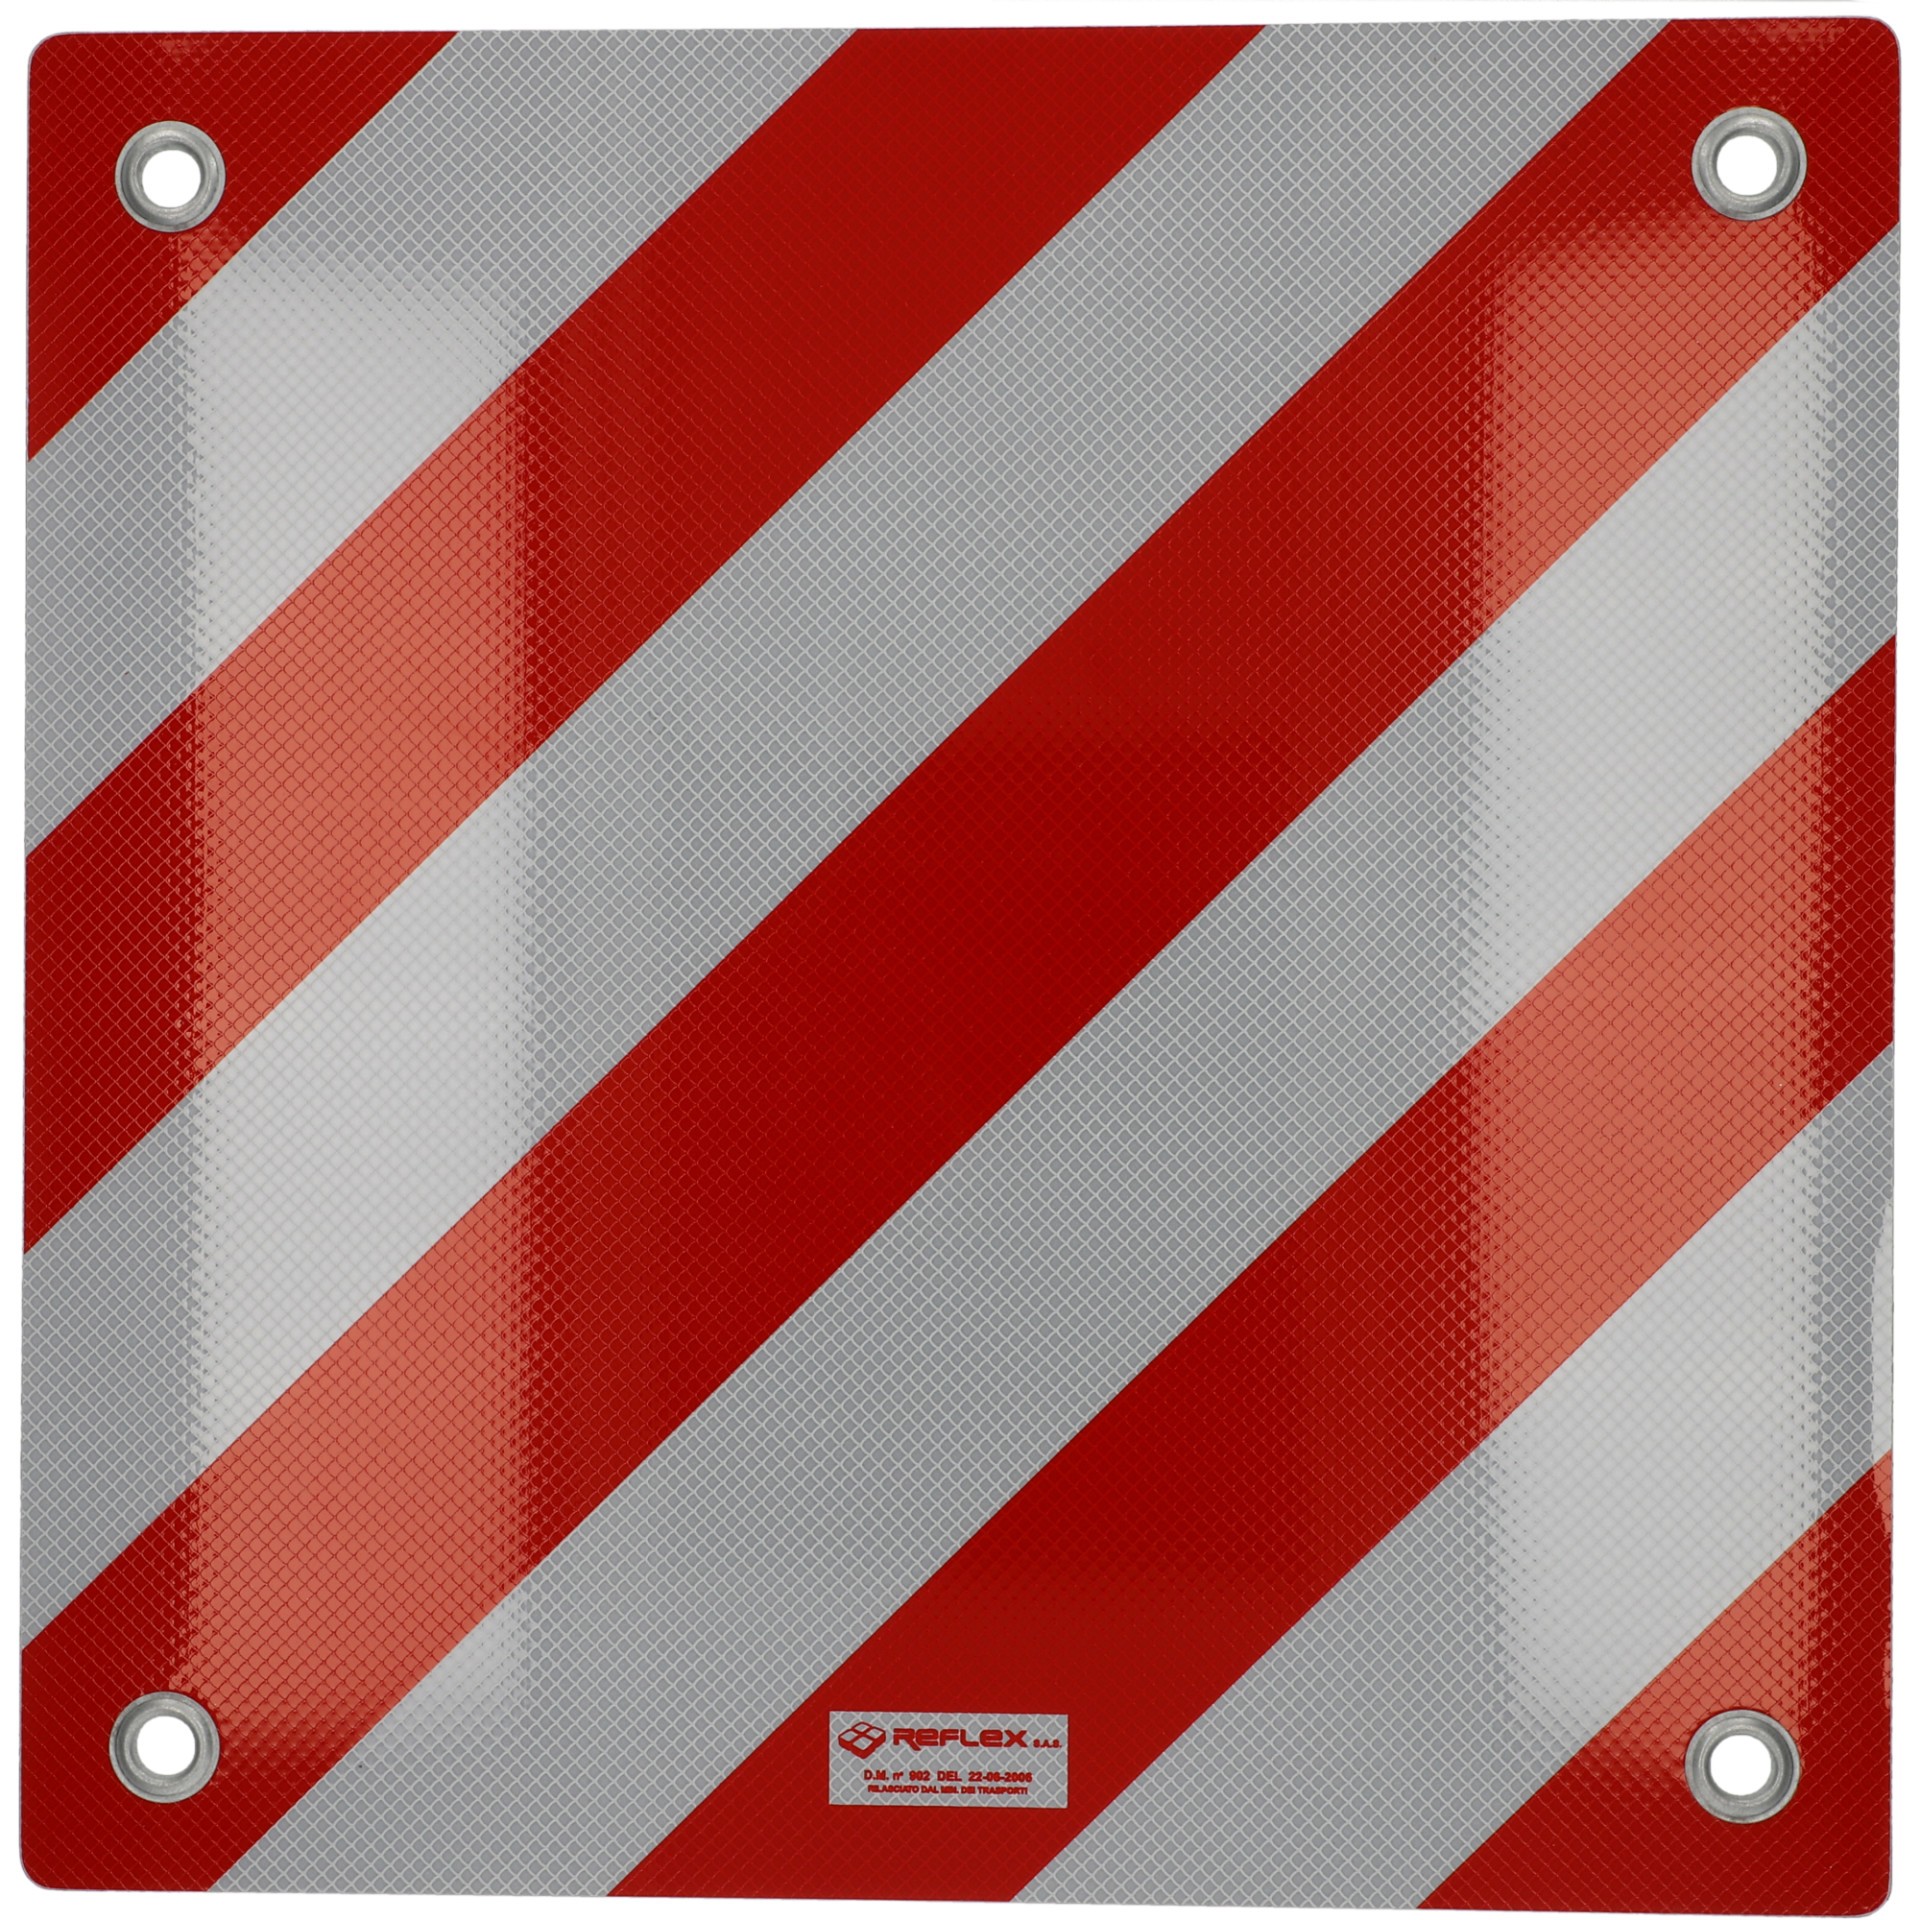 Warntafel Spanien und Italien Aluminium 50x50cm reflektierend rot-weiß